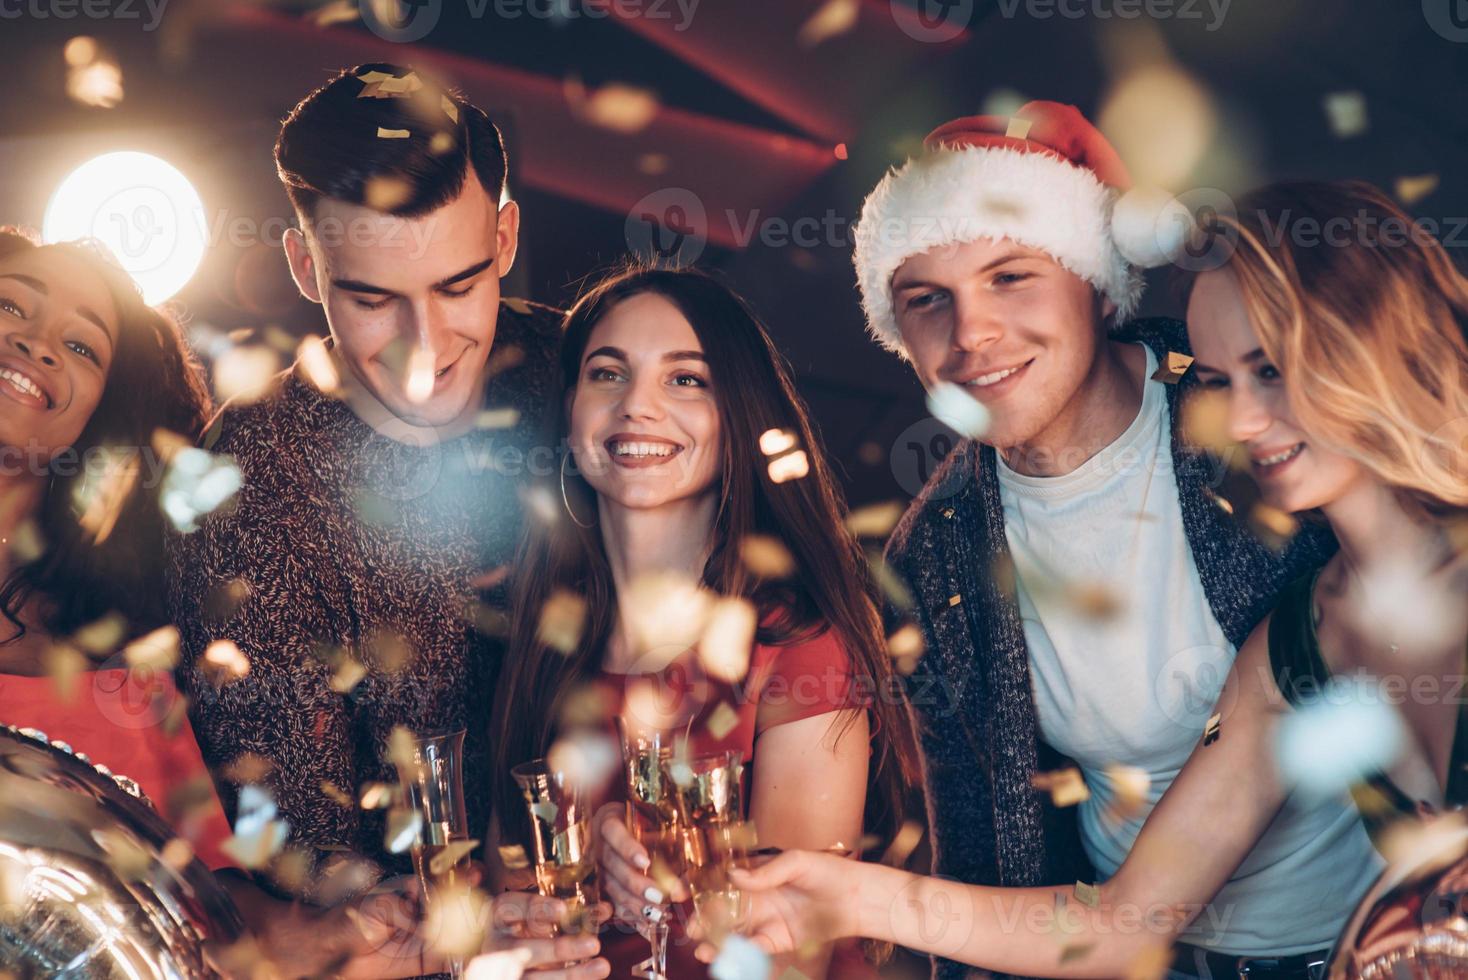 andan av det nya året är i luften. bild på kompissällskapet som festar med alkohol foto